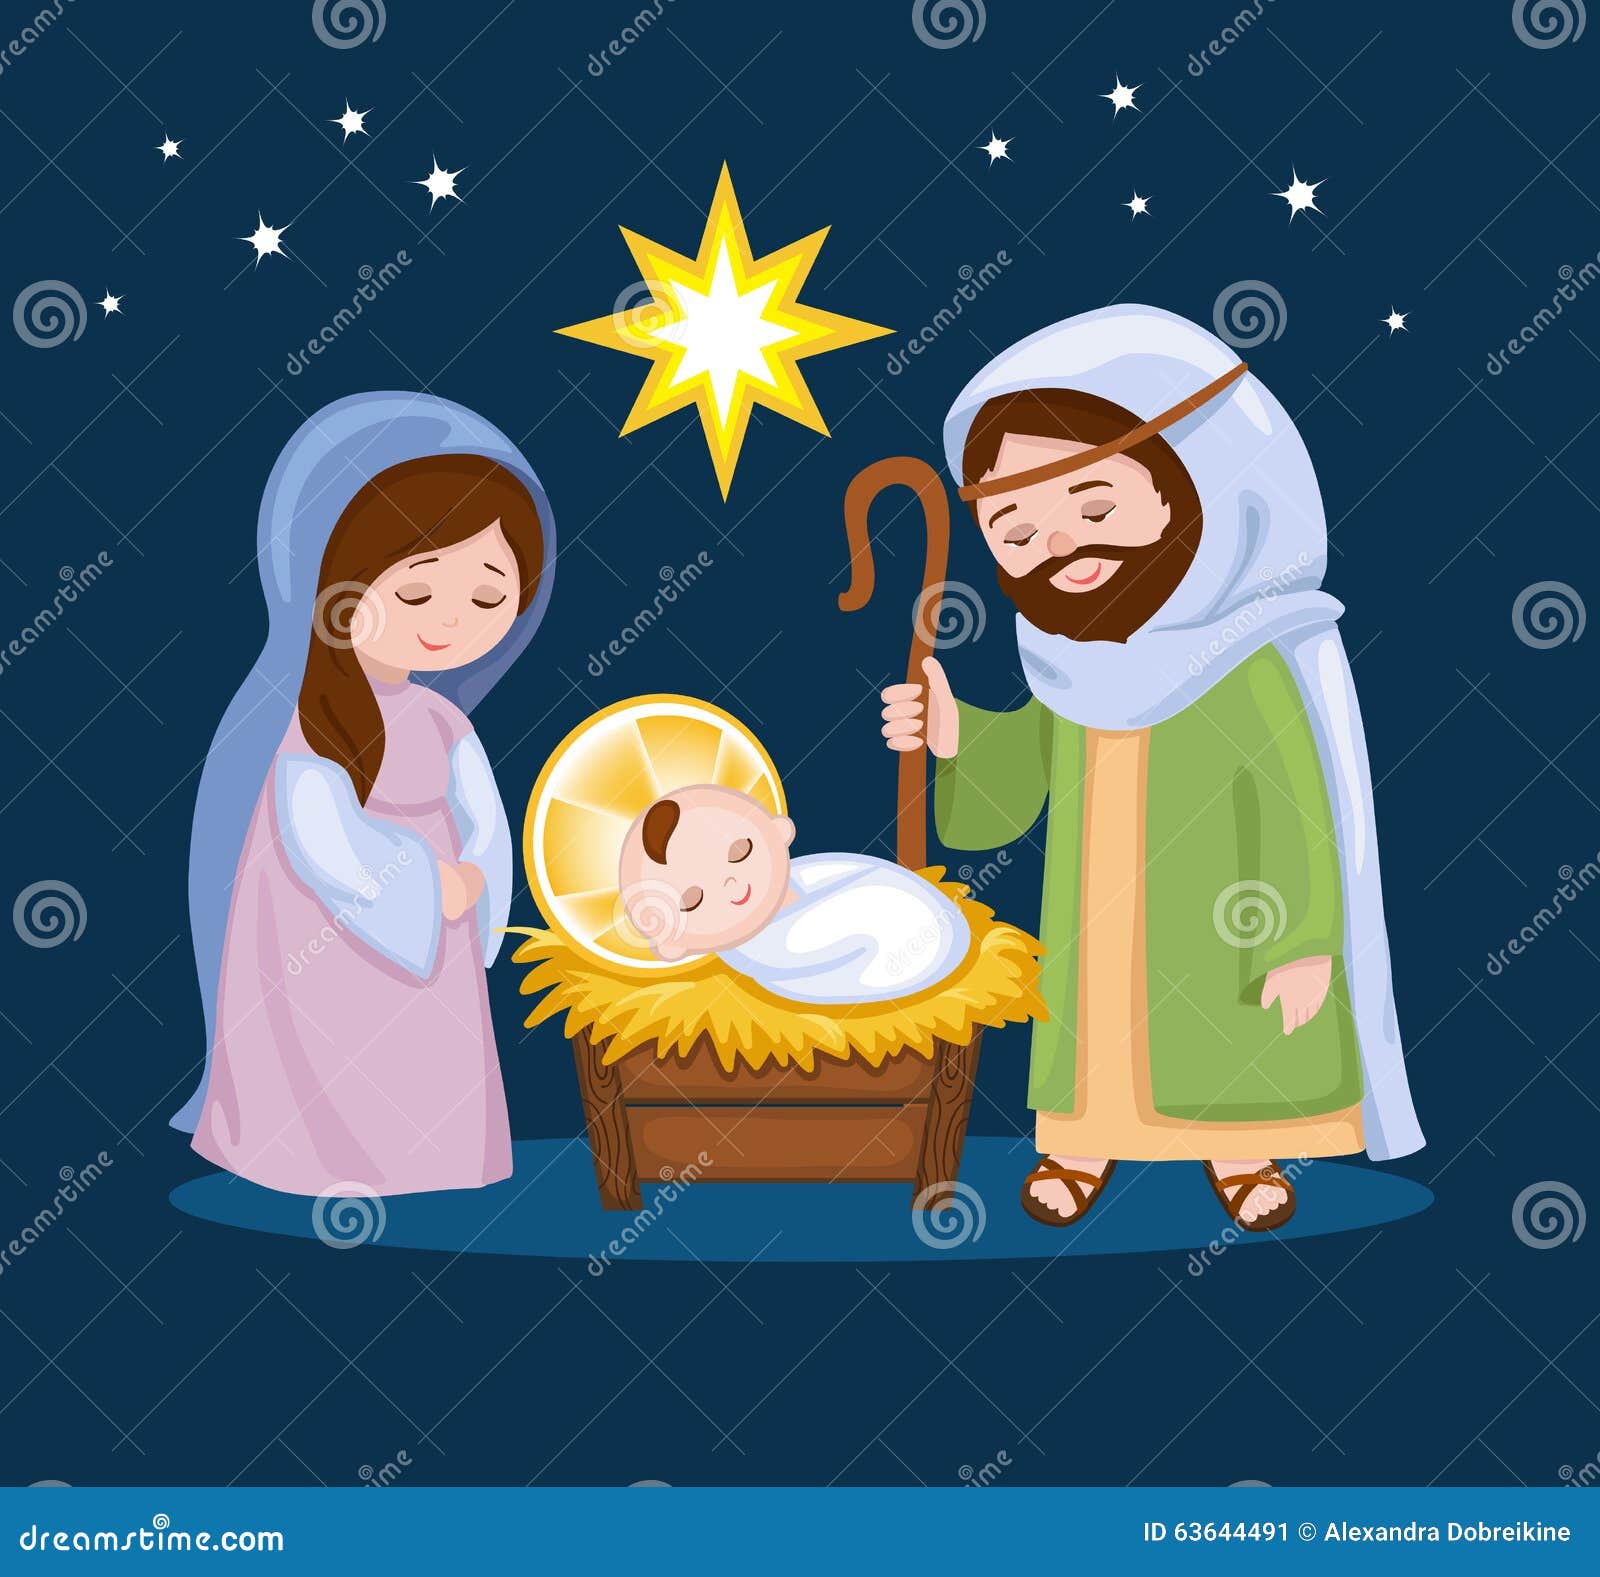 clipart holy family nativity - photo #19